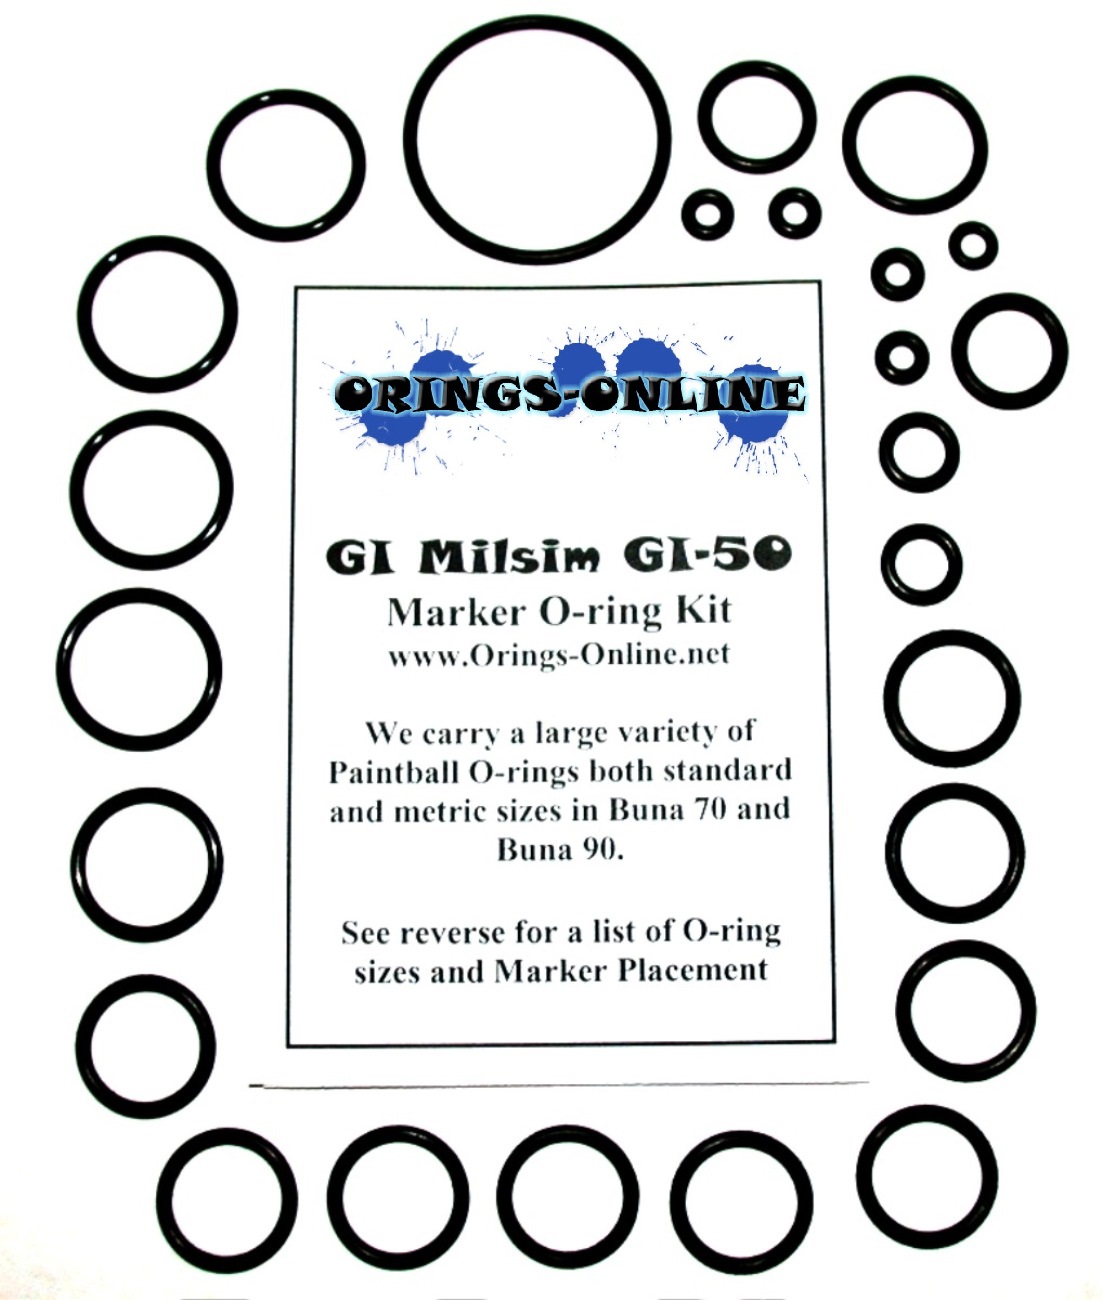 GI Milsim GI-50 Marker O-ring Kit